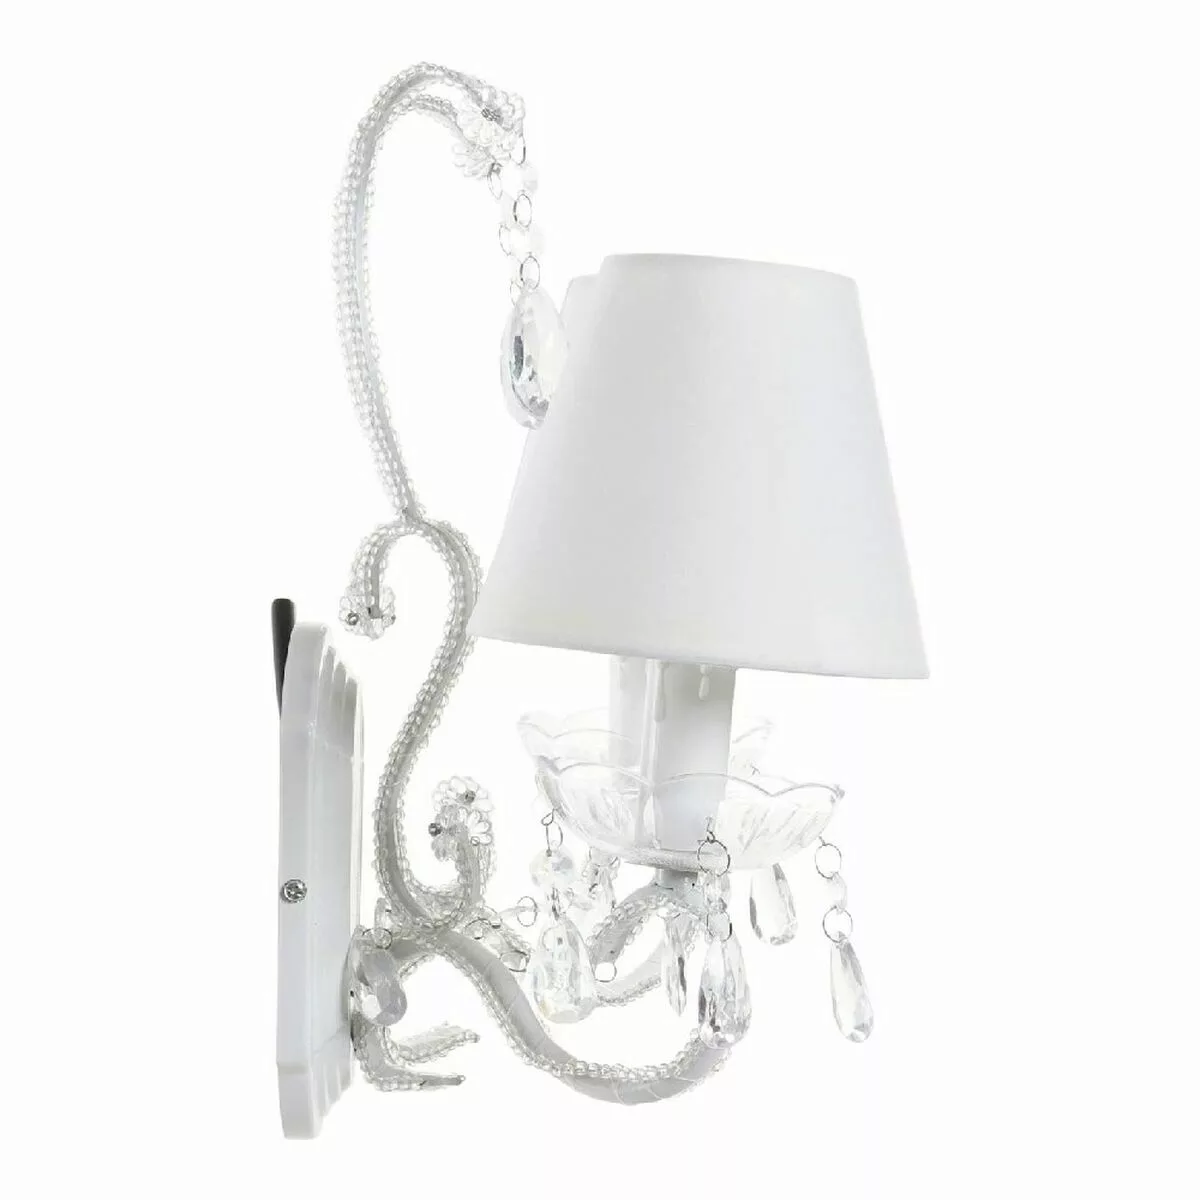 Deckenlampe Dkd Home Decor Weiß Durchsichtig Polyester Acryl Metall 220 V 2 günstig online kaufen